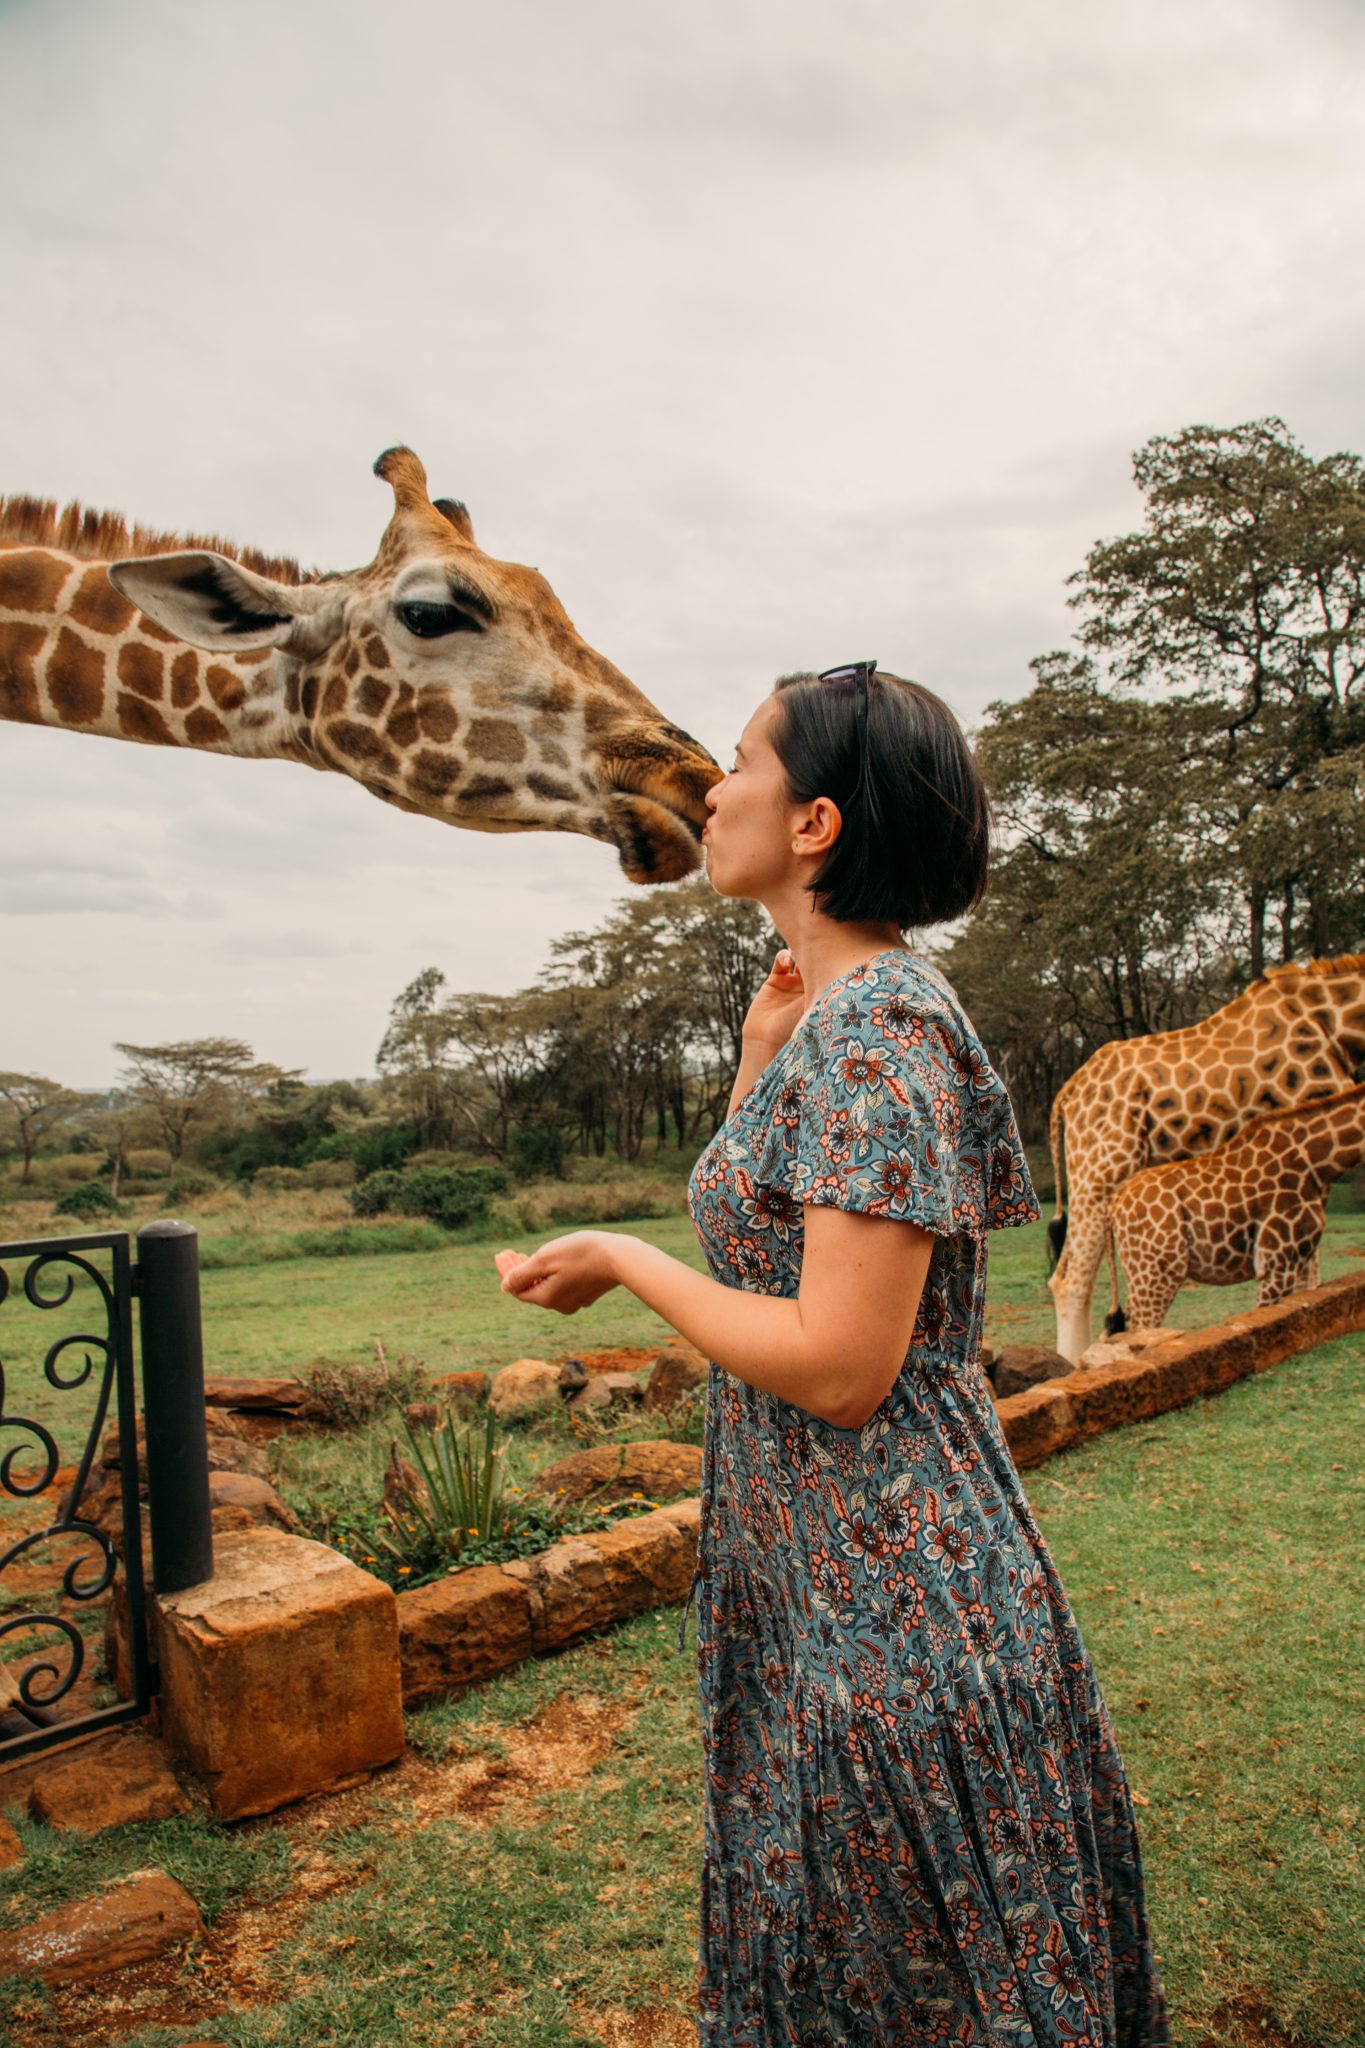 Kissing a giraffe at Giraffe Manor